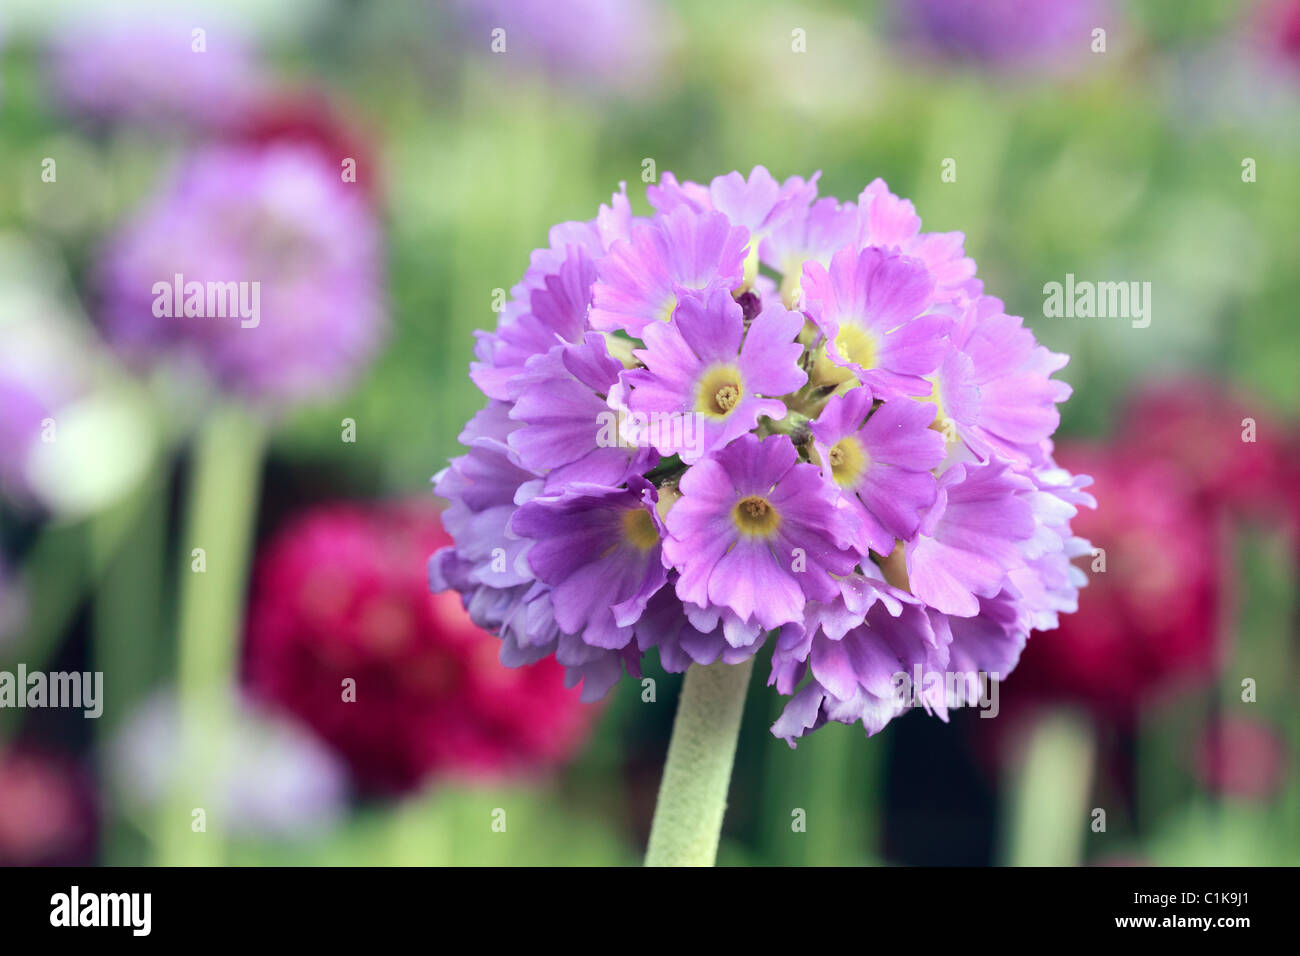 Primula Verbreitungsgebiet, Drumstick Primel oder Himalayan Primel, ist eine Art von Primel (hauptsächlich) Afghanistan und Chinesisch Alpenregionen heimisch. Heute wird er häufig in Hausgärten angebaut Stockfoto